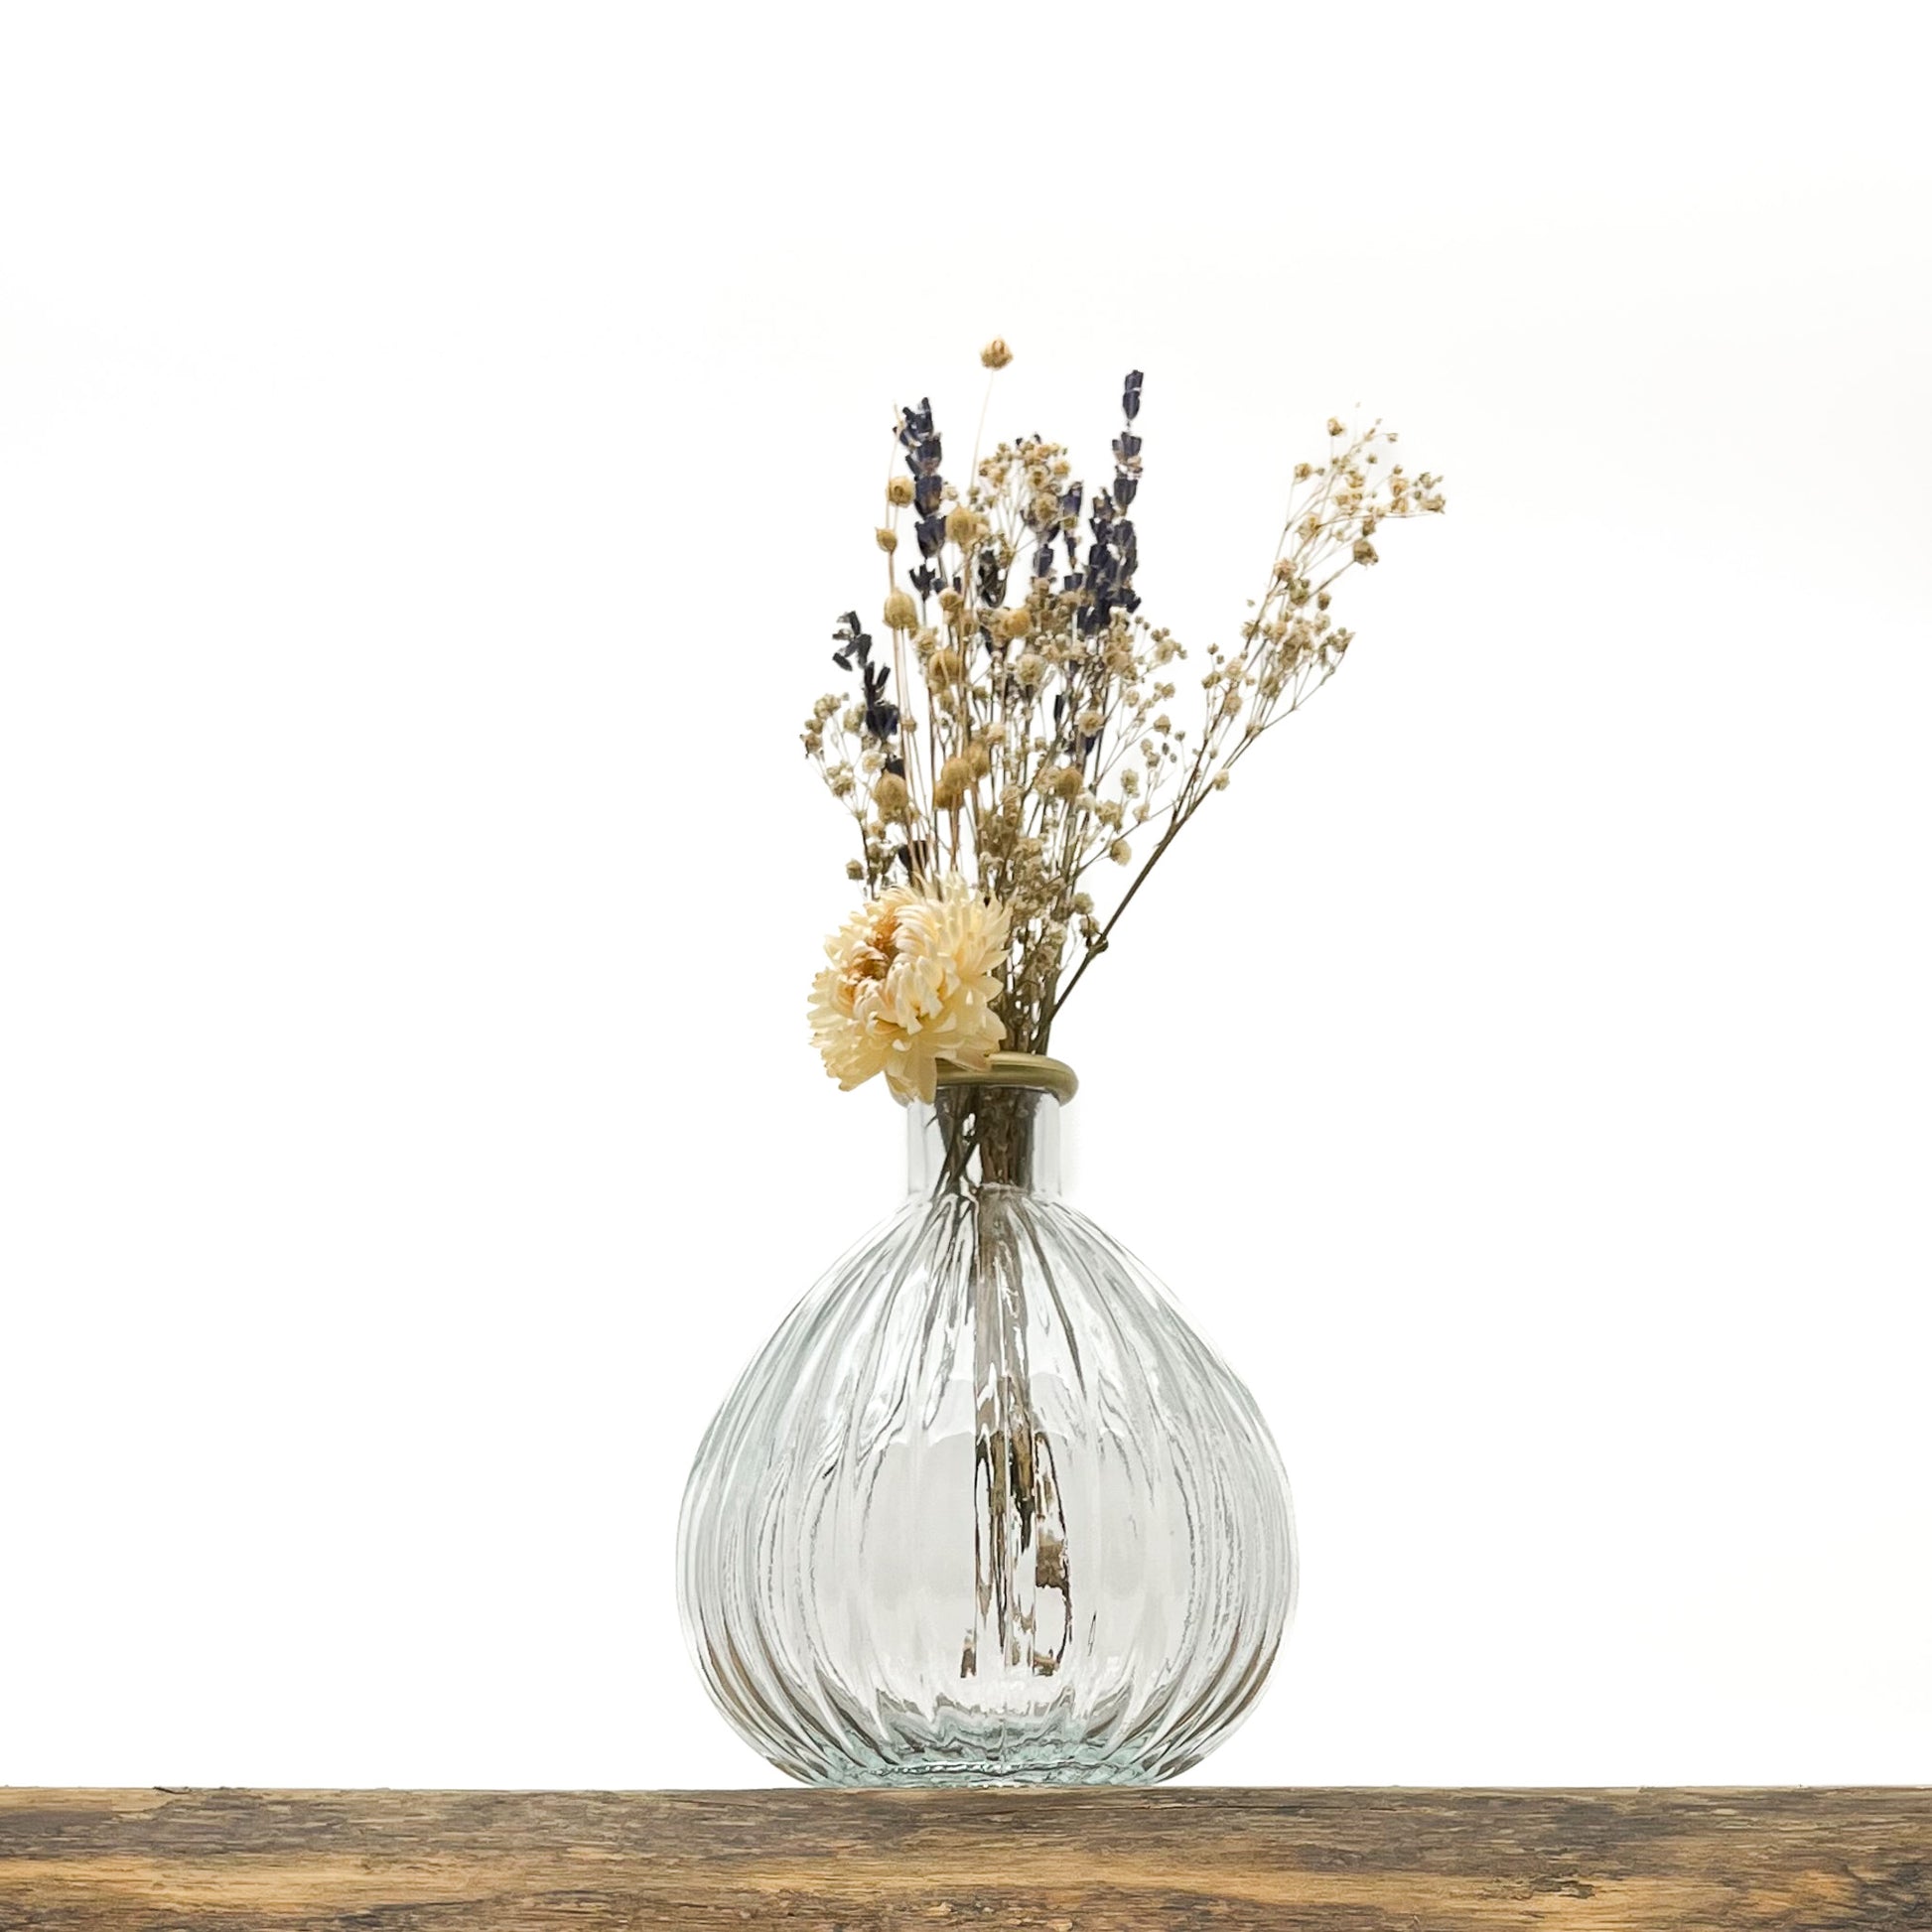 Vase en verre recyclé translucide avec une touche d'or sur le col du vase. Livré avec fleurs séchées offertes.